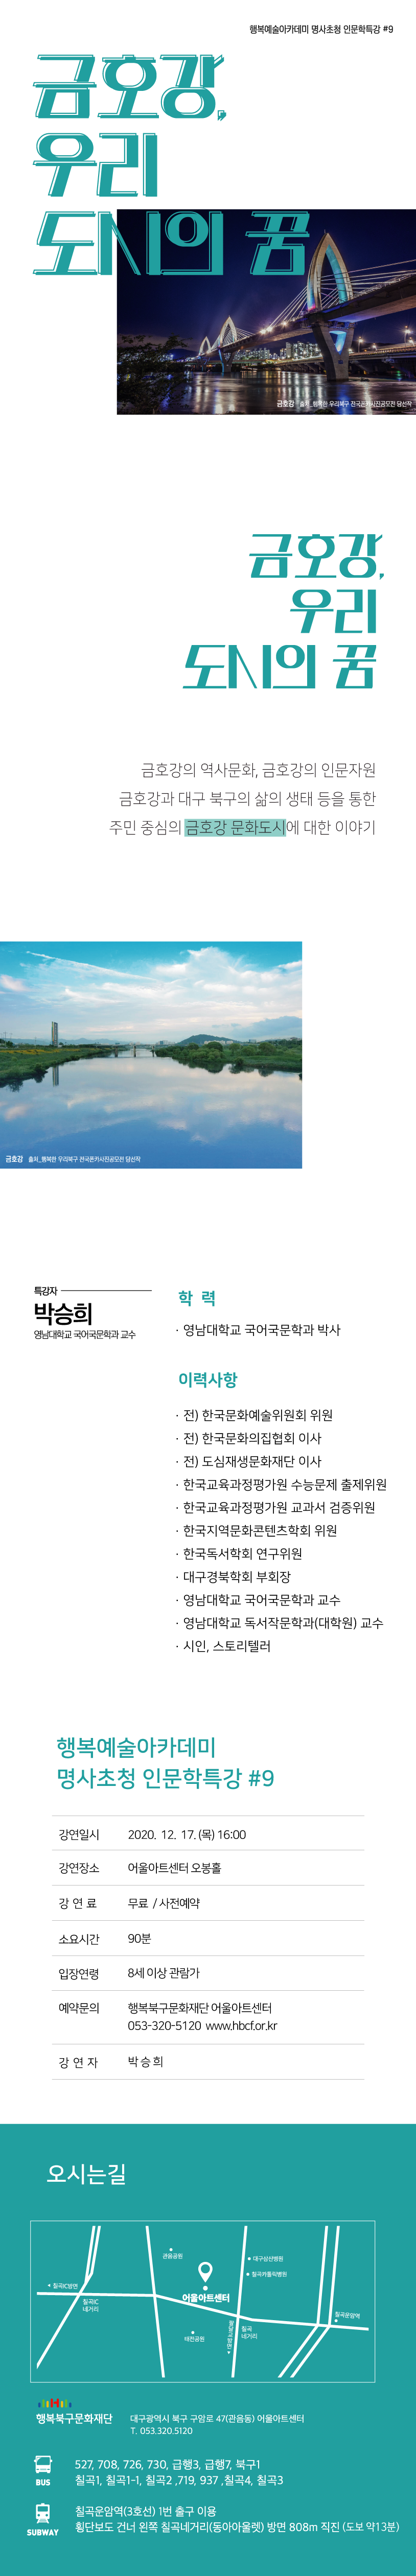 인문학특강(박승희)_웹페이지.png